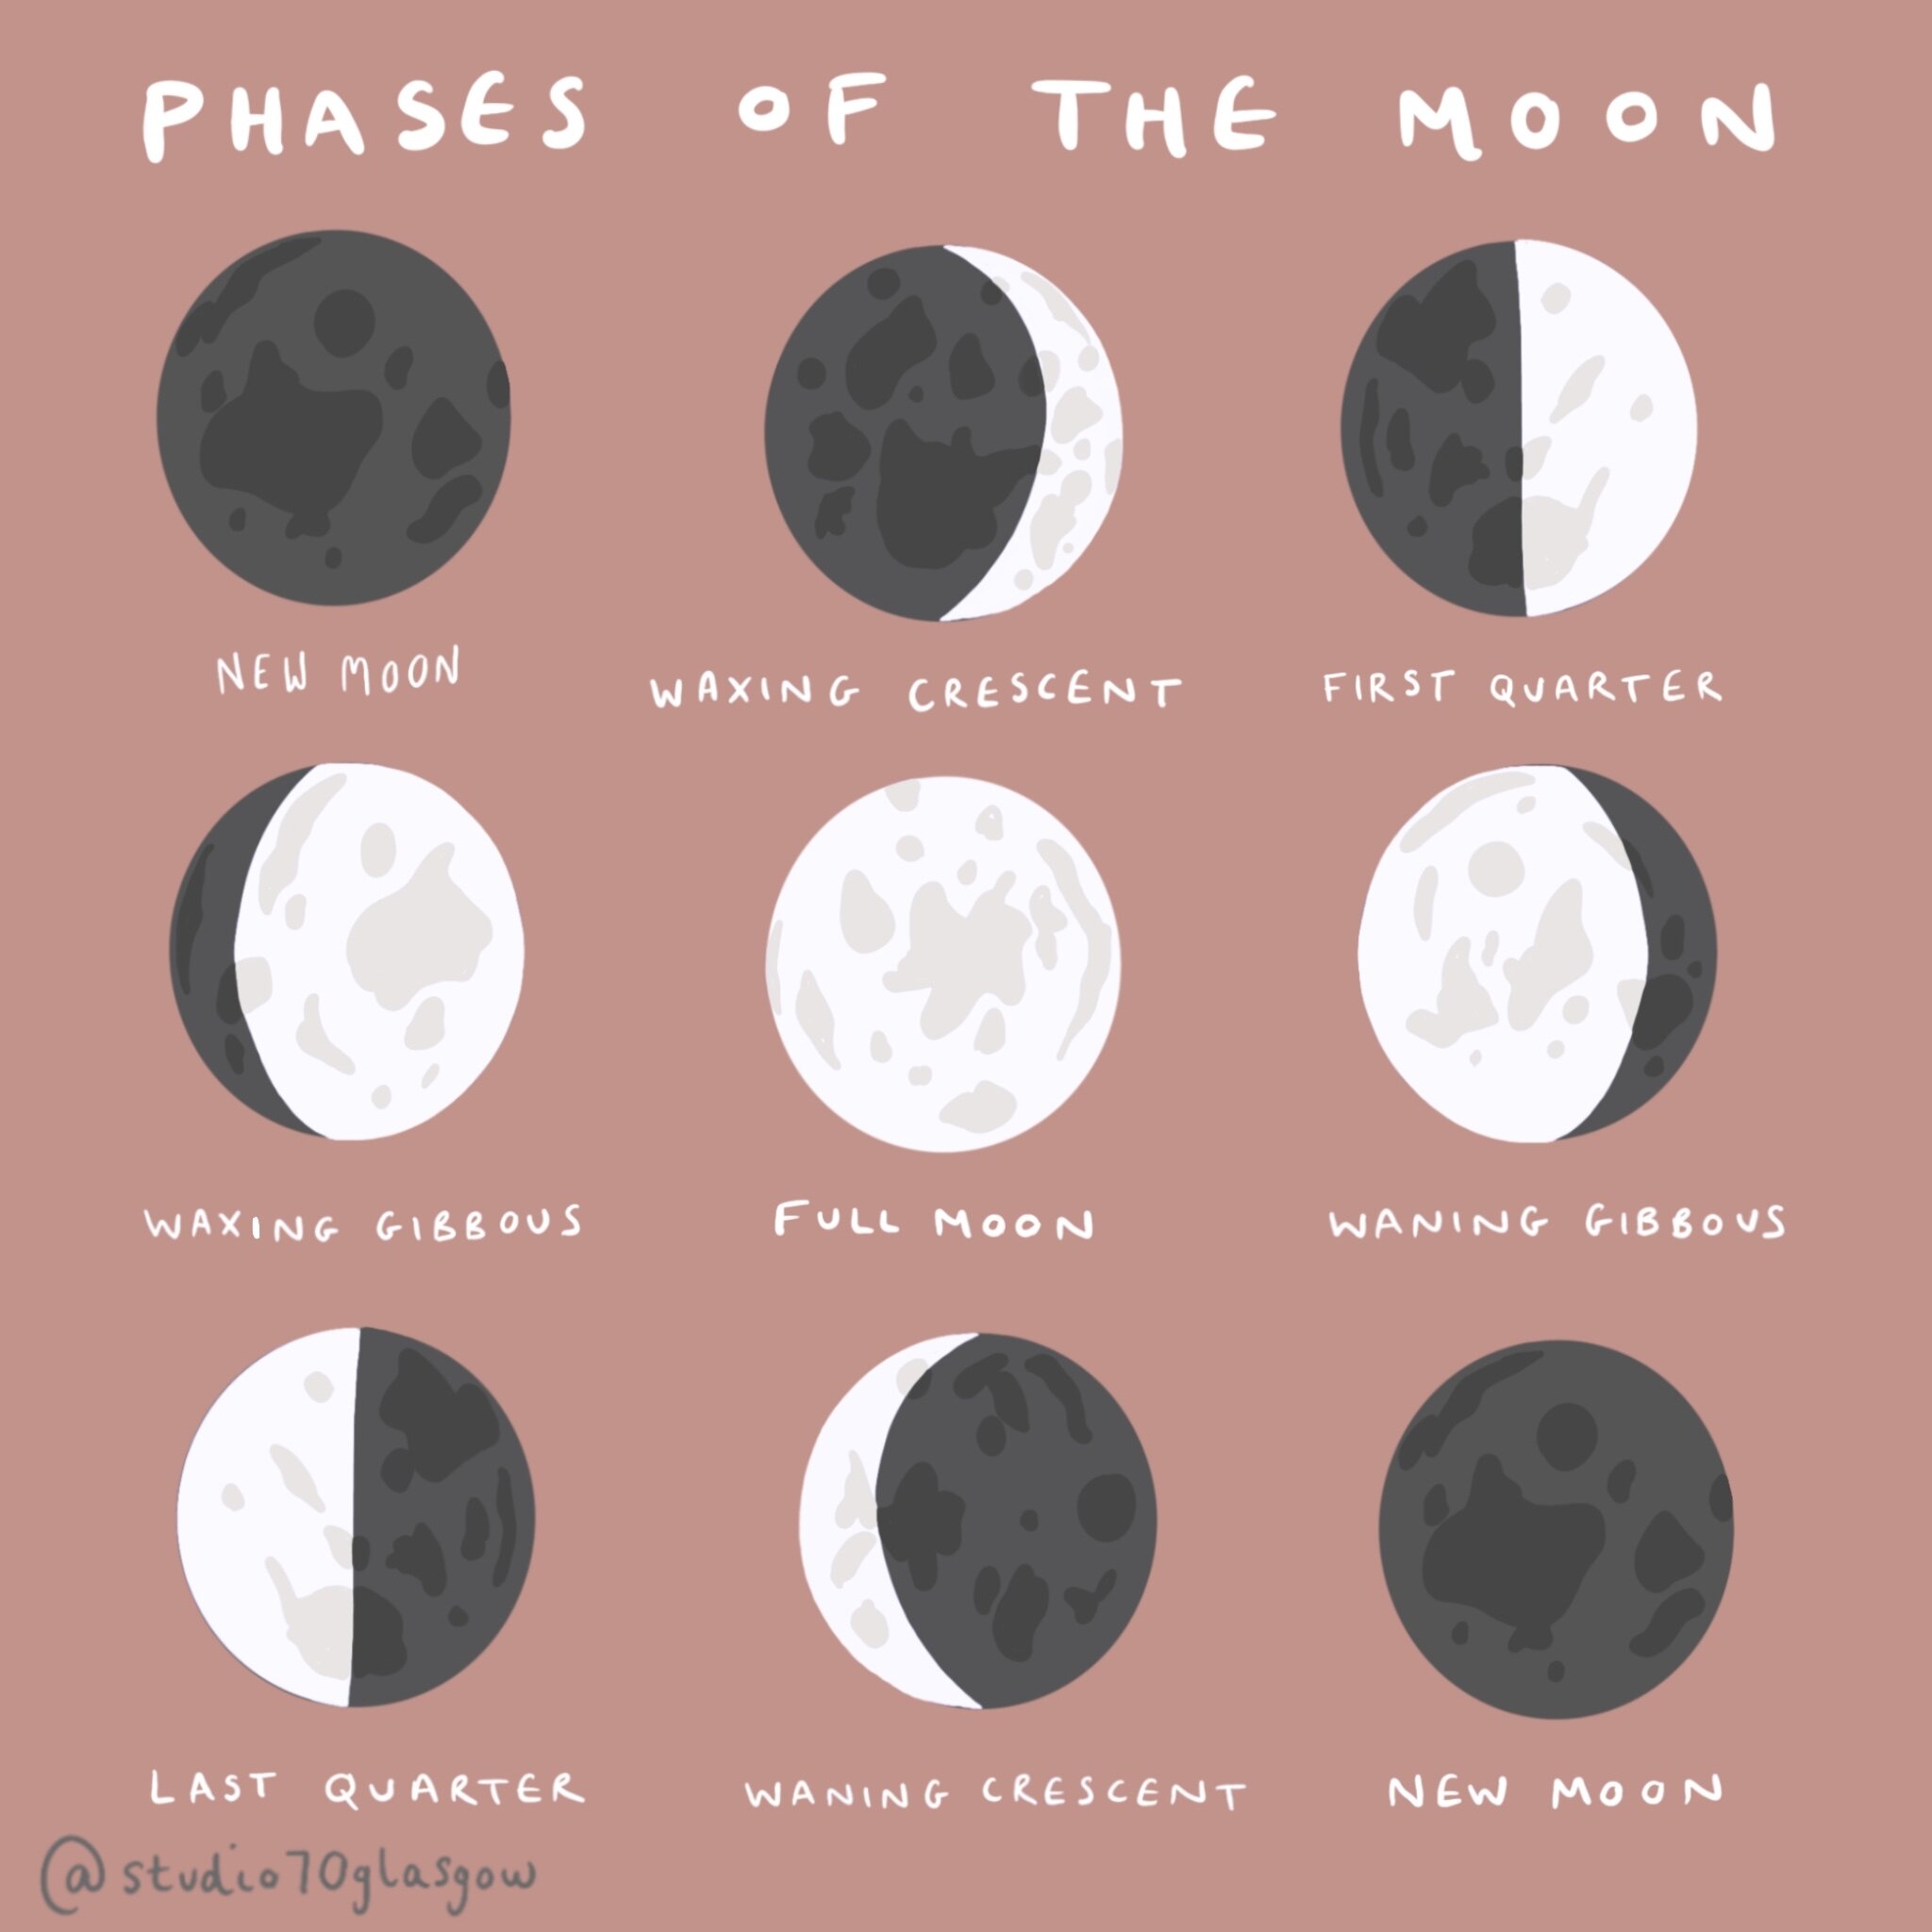 https://images.squarespace-cdn.com/content/v1/57b86d00ff7c50e4a7ef6a02/1616596599541-T5MEAMRO9GTH0G7L2ZWL/phases+of+the+moon.jpg